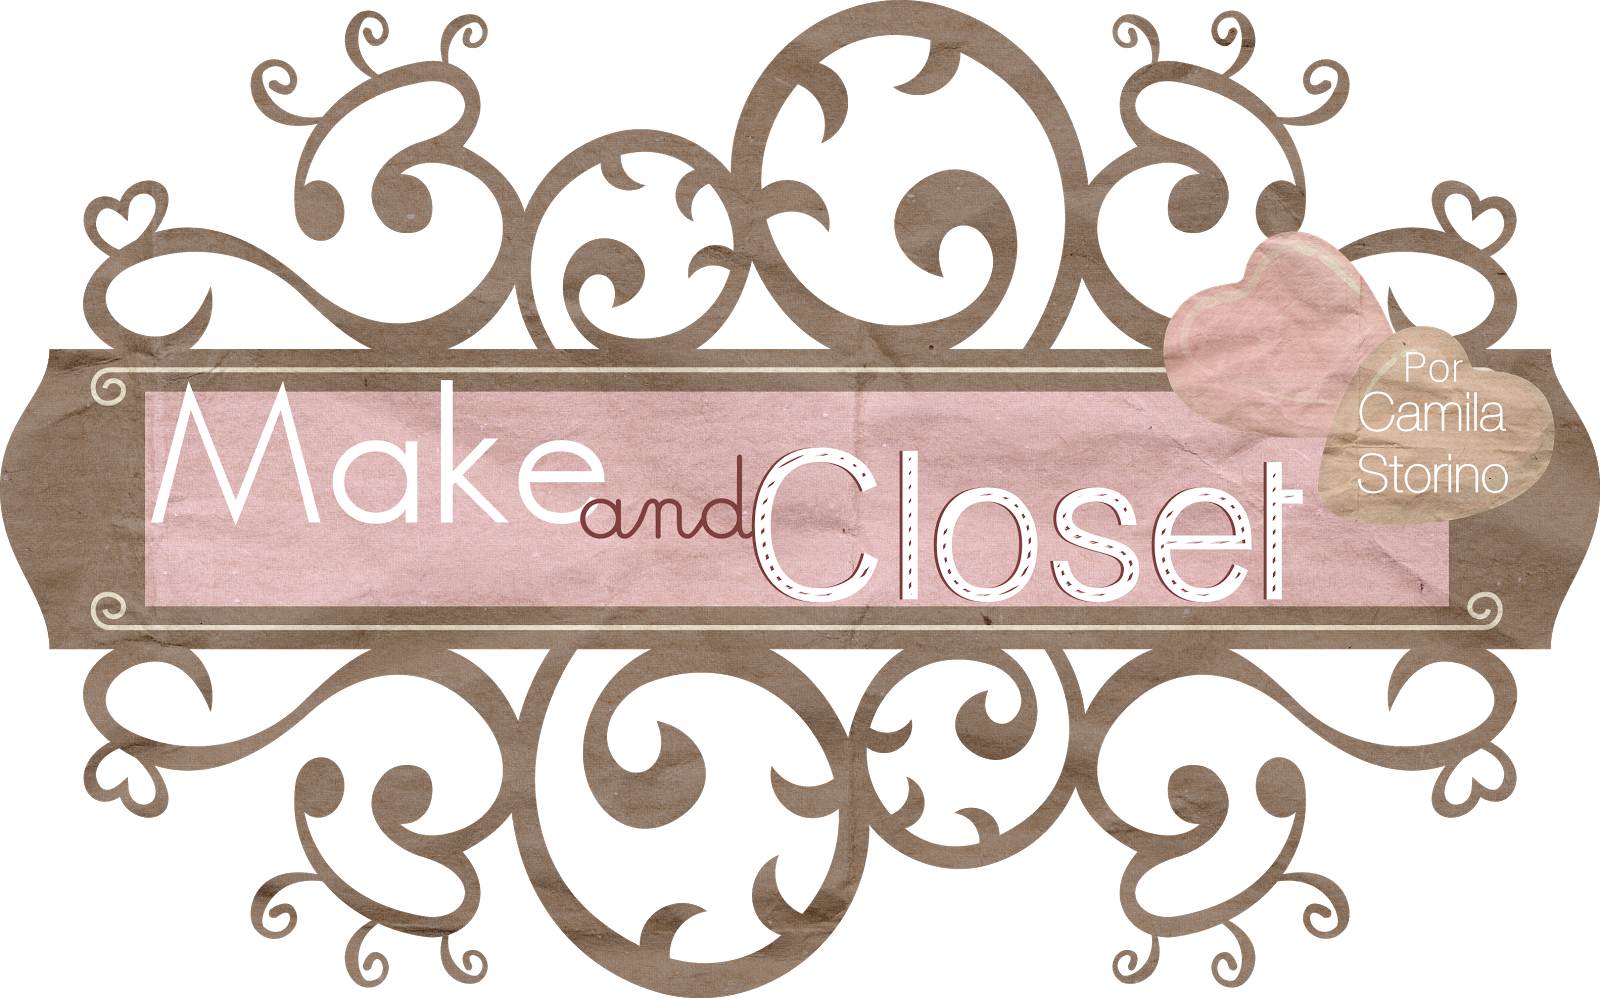 Make and Closet | Por Camila Storino